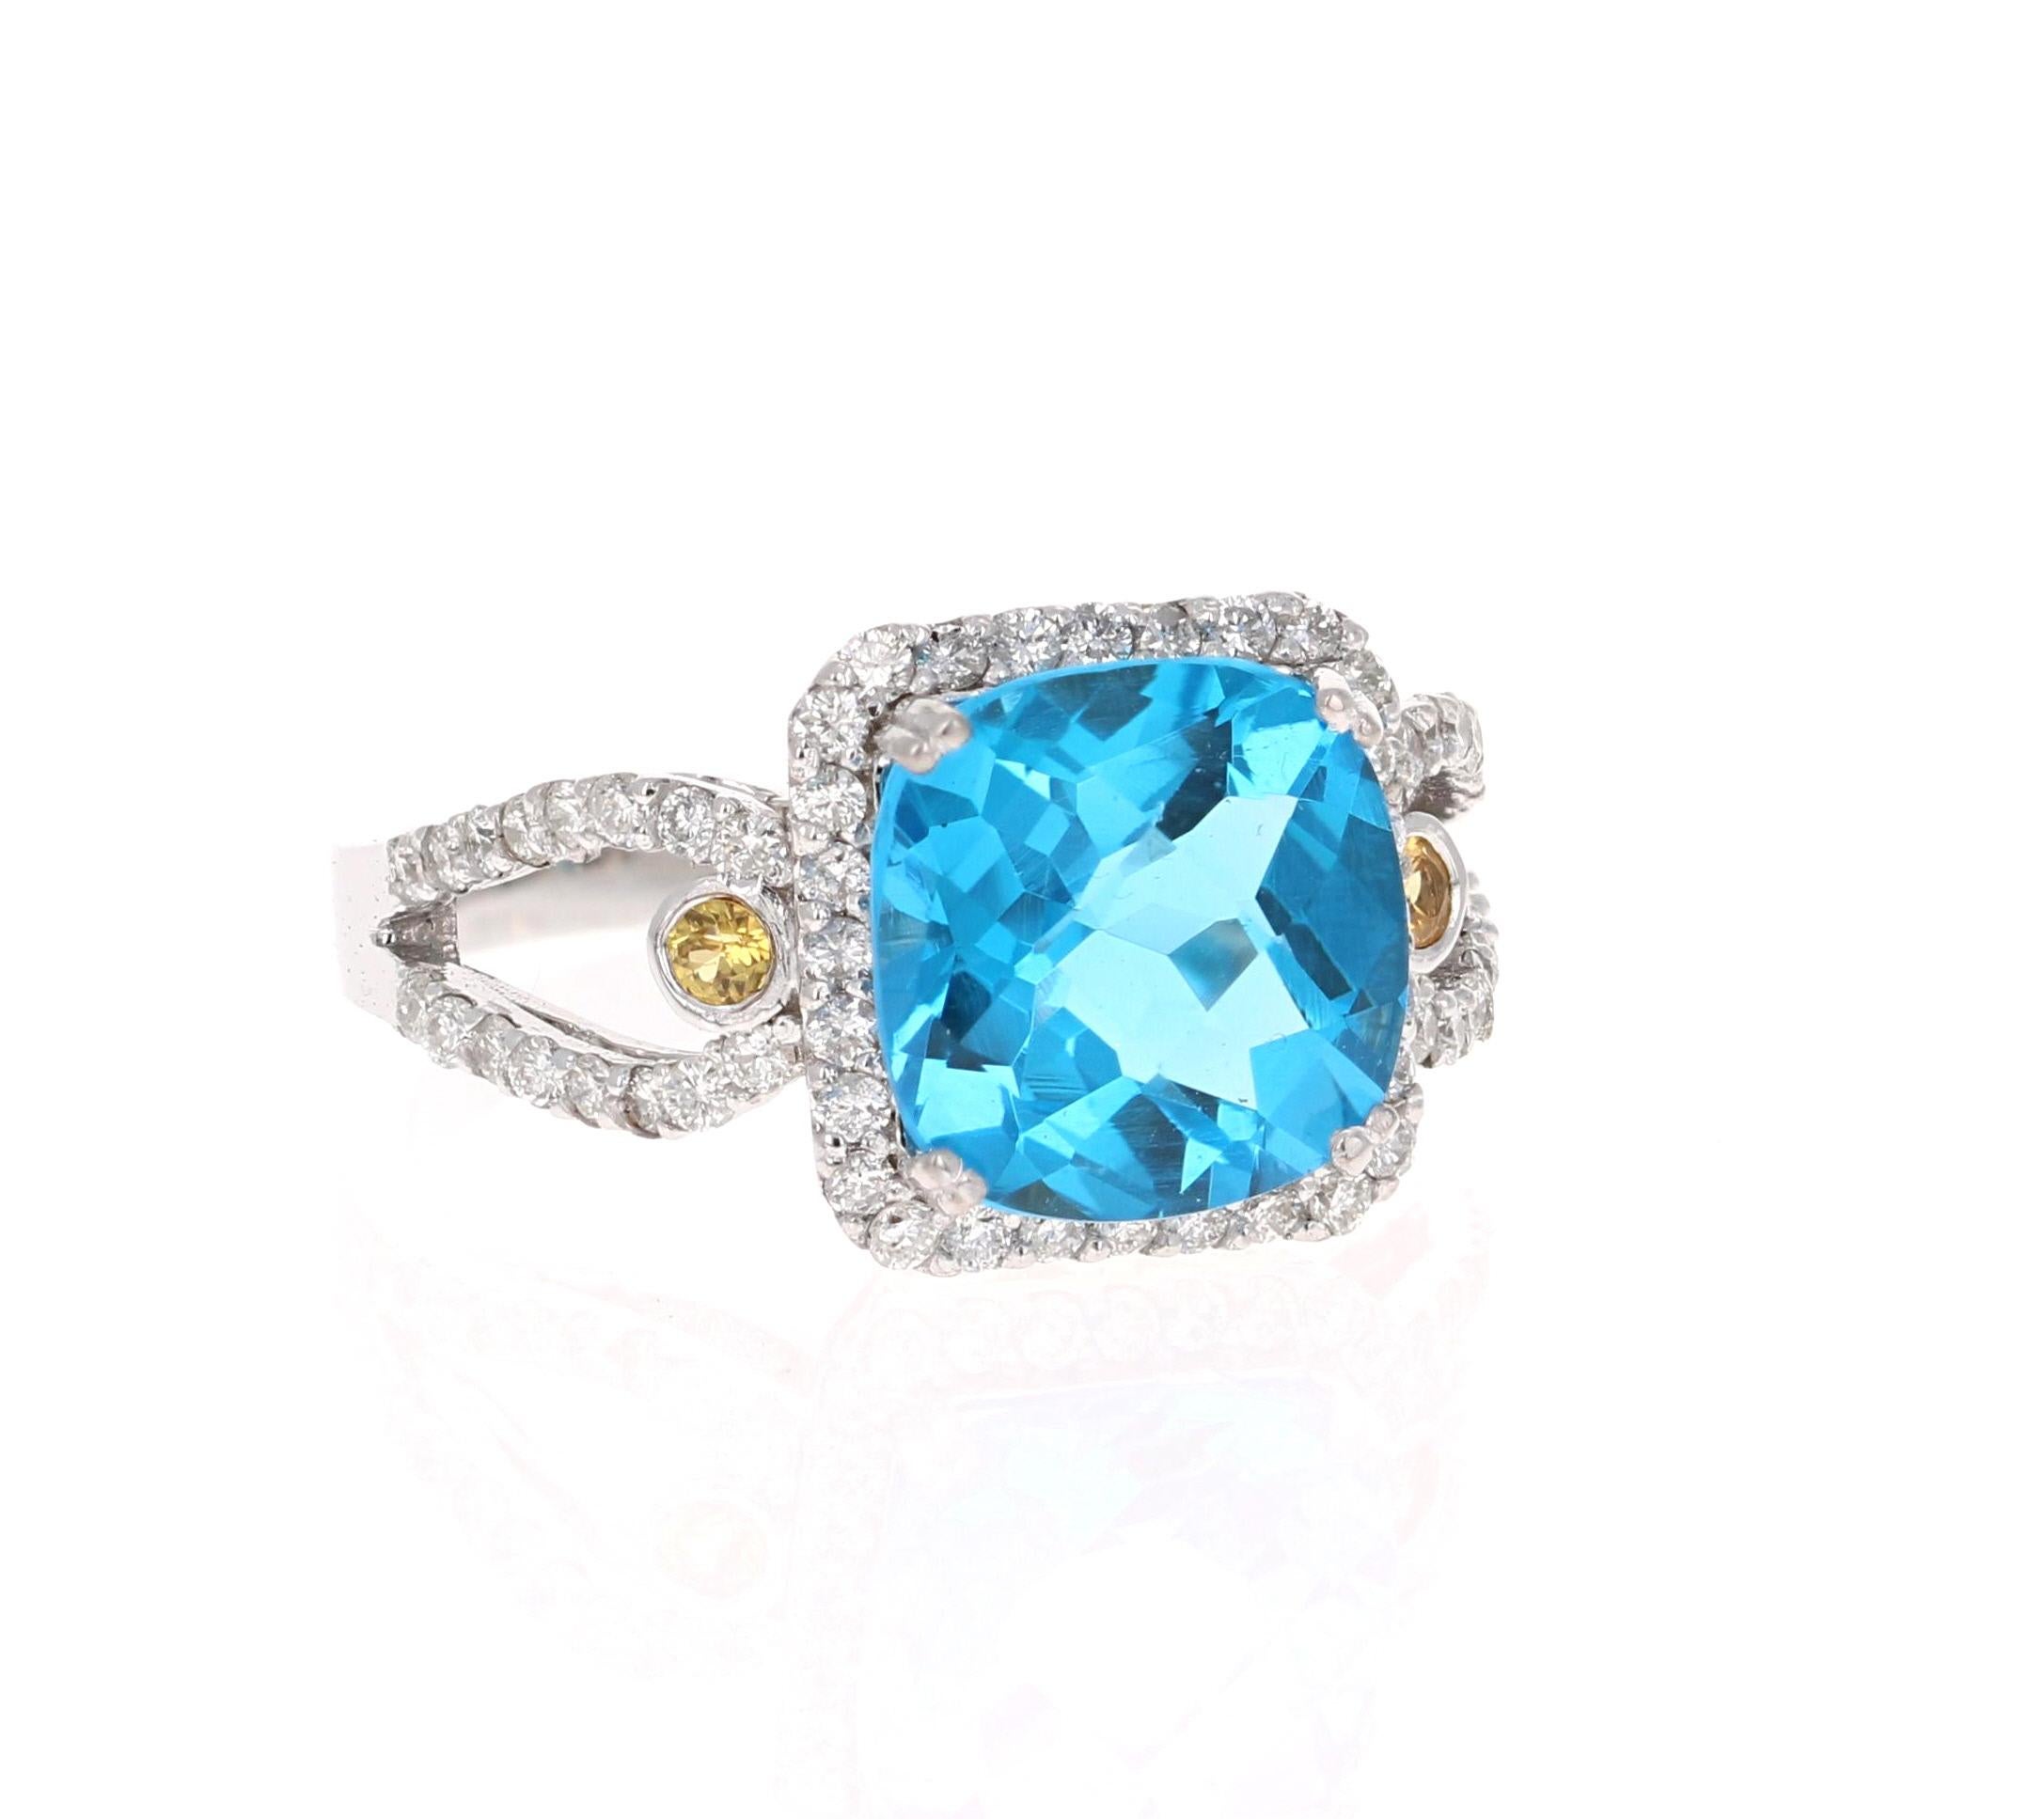 Dieser wunderschöne Ring mit Blautopas und Diamant im Kissenschliff hat einen atemberaubend lebendigen Blautopas mit einem Gewicht von 3,97 Karat. Er ist von einem Halo aus 60 Diamanten im Rundschliff umgeben, die 0,55 Karat wiegen, und hat 2 gelbe